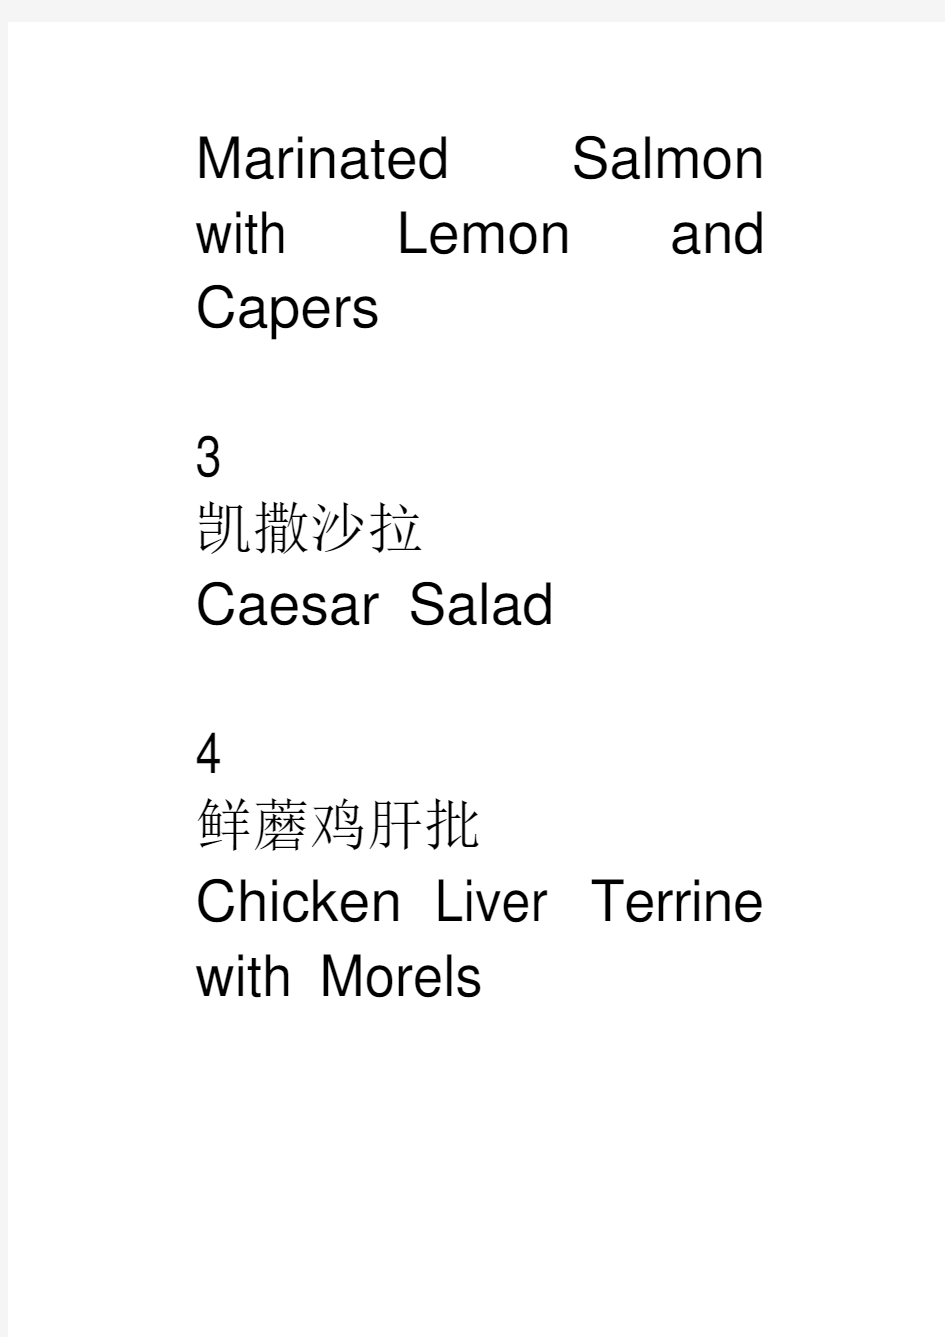 实用文档之西餐菜单中英文对照